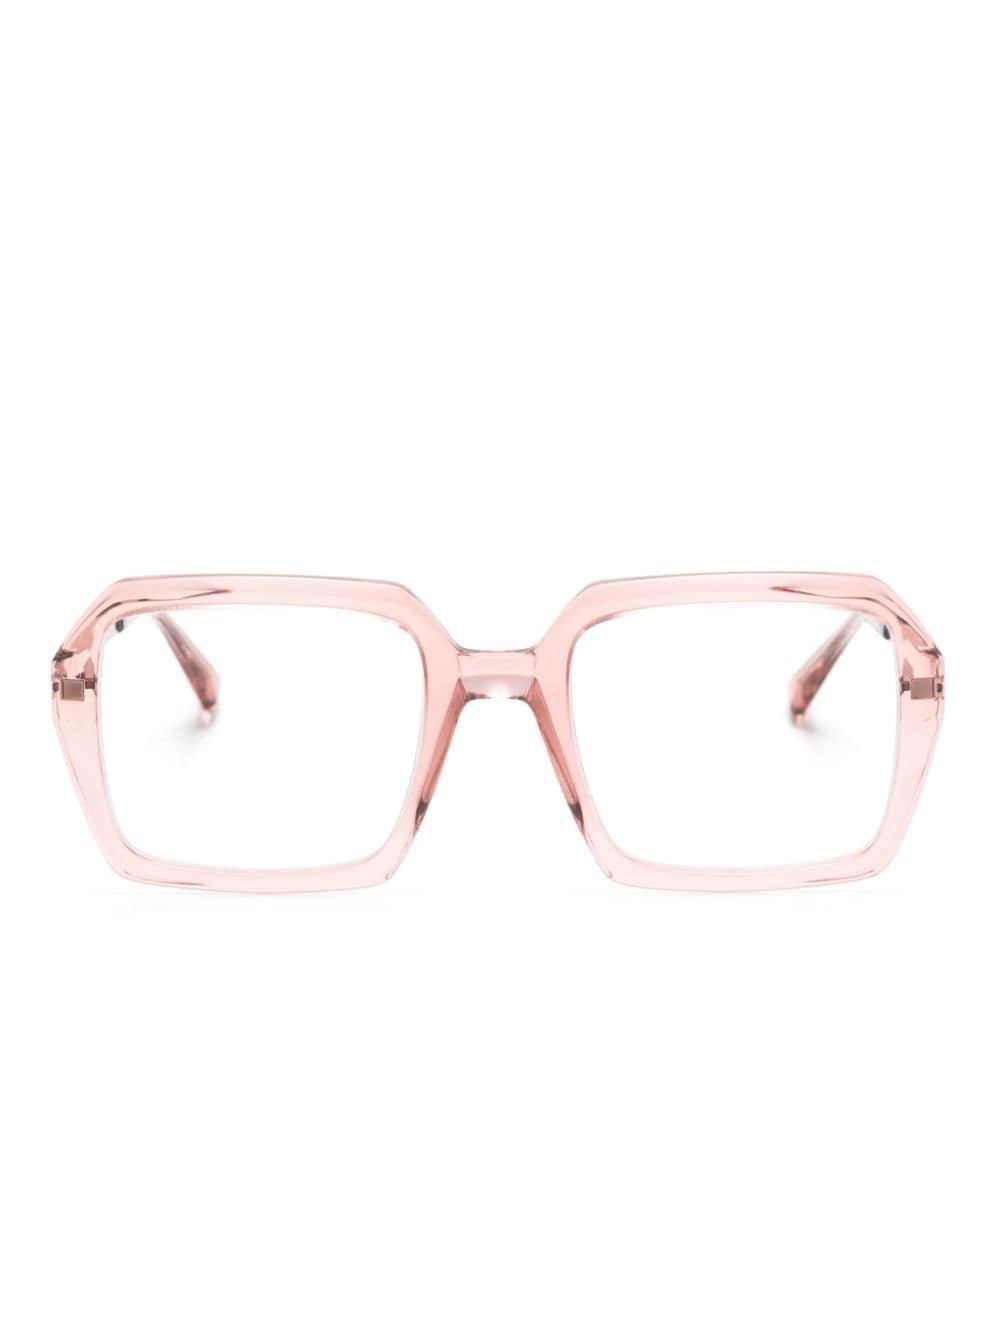 Vanilla square-frame glasses